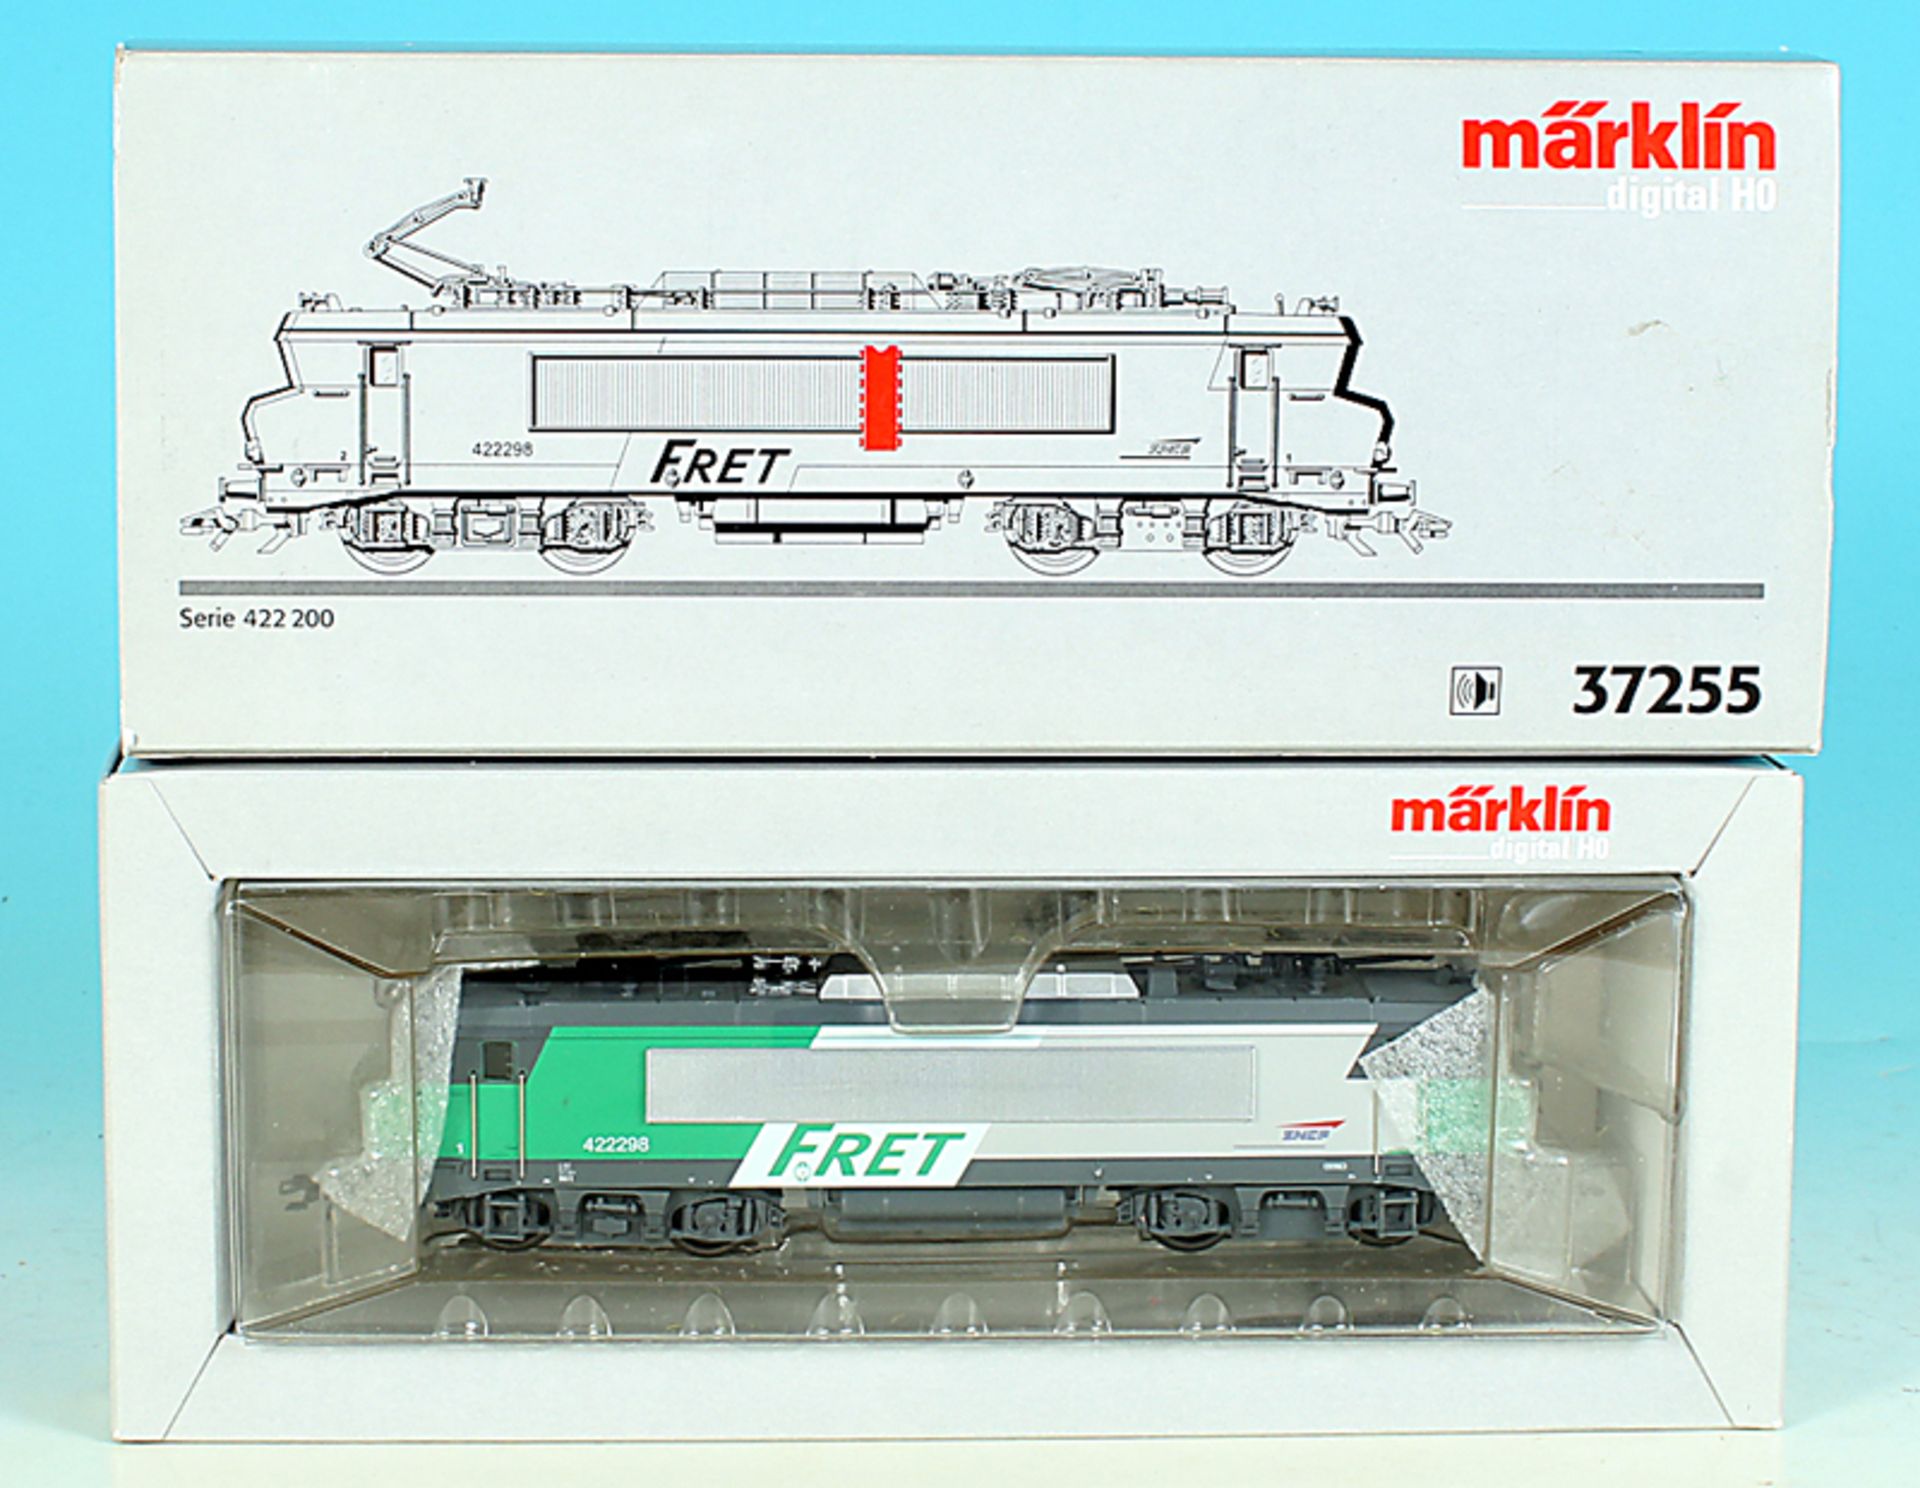 MÄRKLIN E-Lok Serie 422 200 -  37255 -  digital